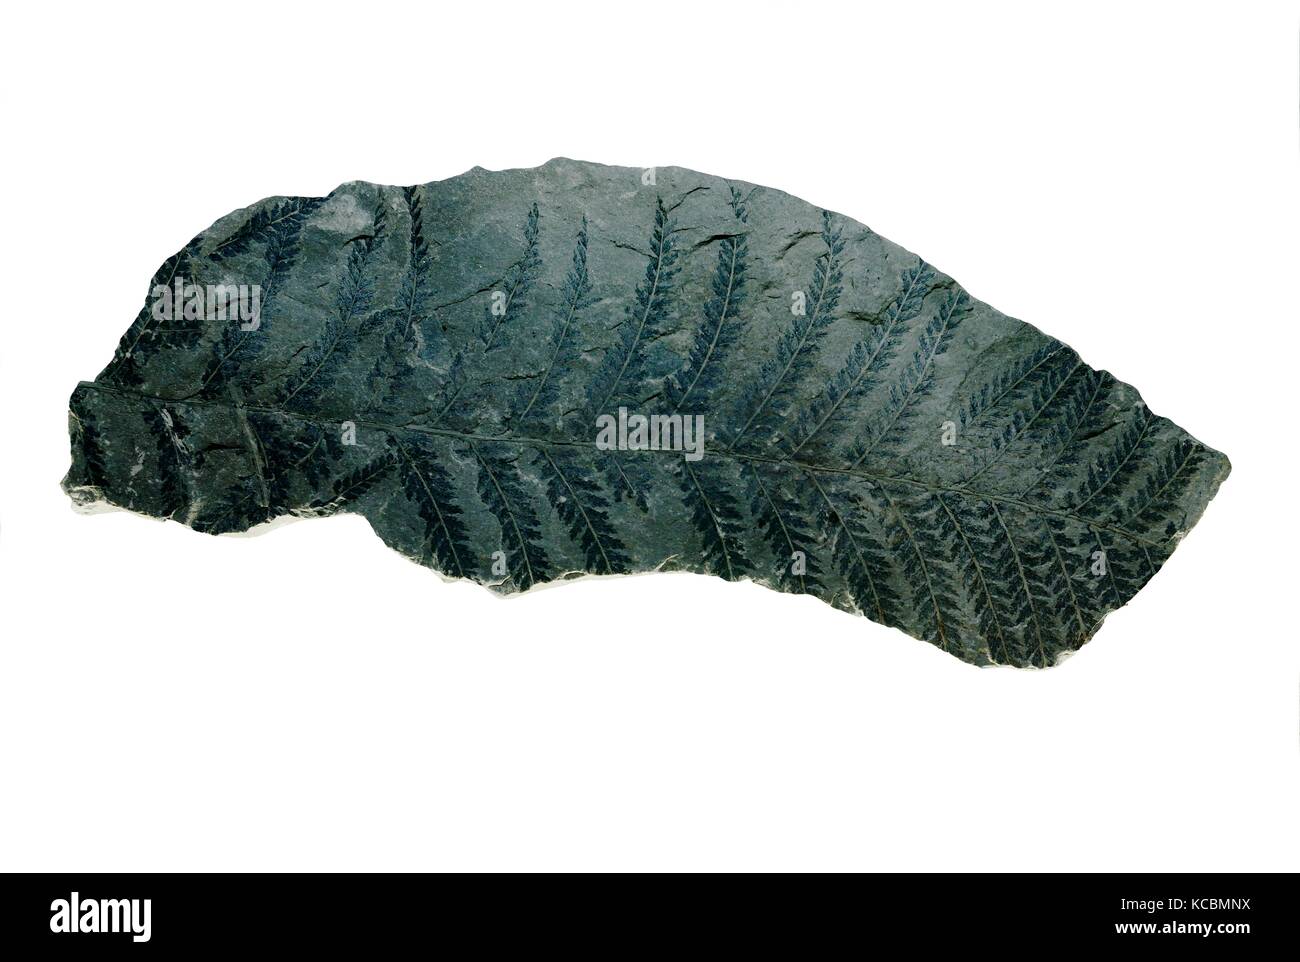 Combustibles fósiles de helechos sphenopteris carbonizado fronda coniopteris hymenophylloides foliar de la época jurásica de carbón de China. Museo de la ciudad de Taiyuan, Shanxi Foto de stock